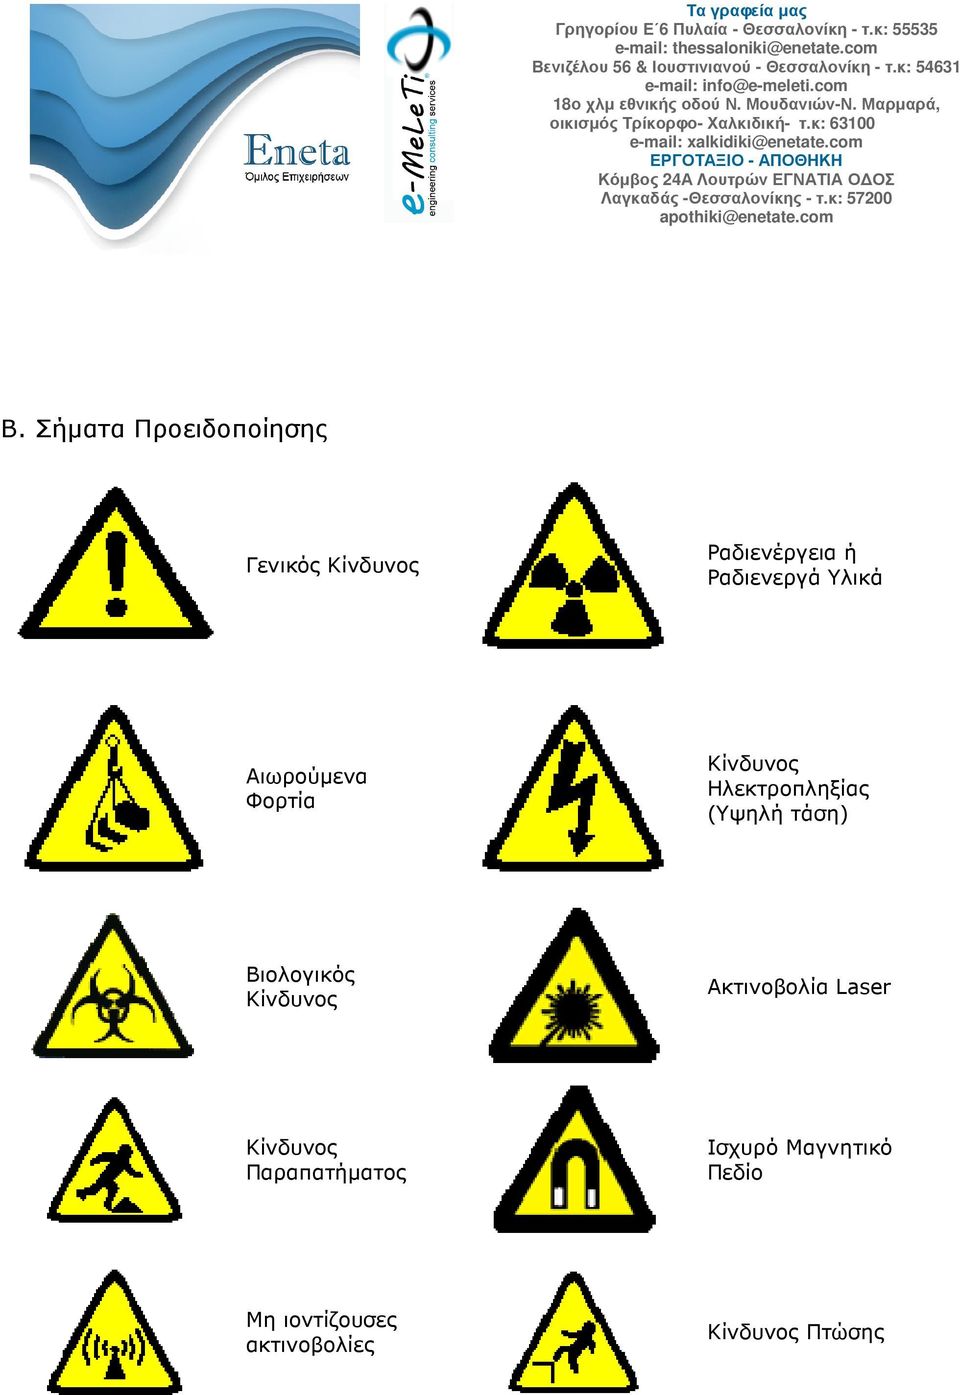 (Υψηλή τάση) Βιολογικός Κίνδυνος Ακτινοβολία Laser Κίνδυνος